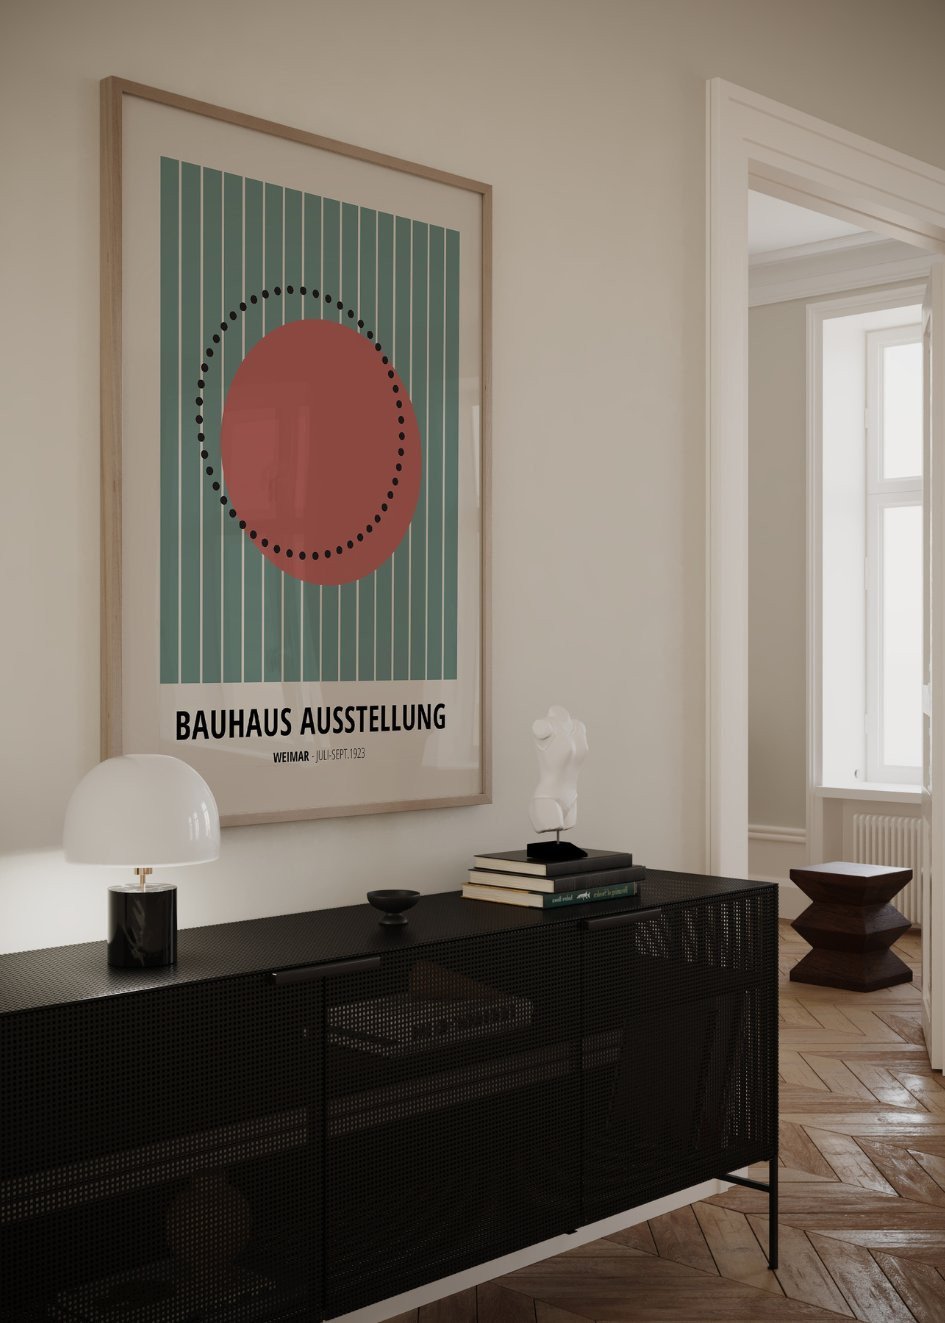 Bauhaus Ausstellung №23 Poster